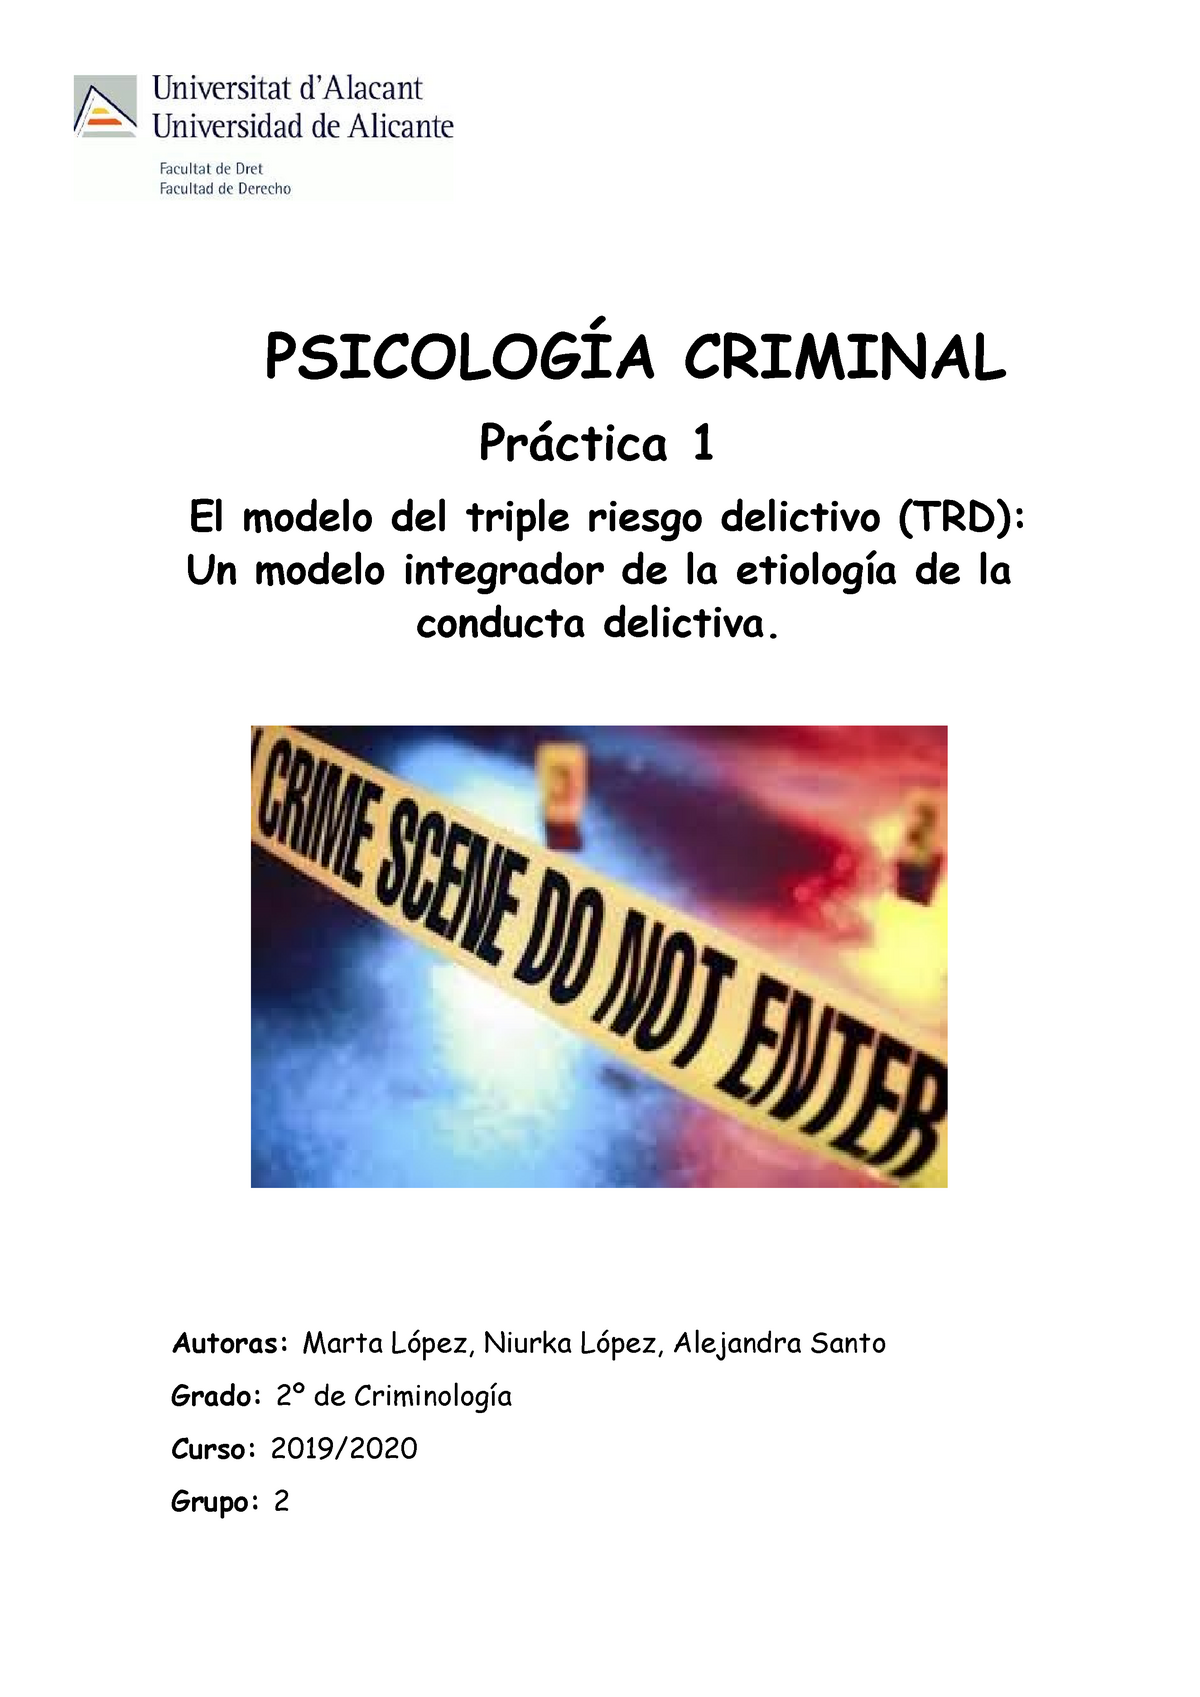 Práctica 1 Psicología Criminal - PSICOLOGÍA CRIMINAL Práctica 1 El modelo  del triple riesgo - Studocu